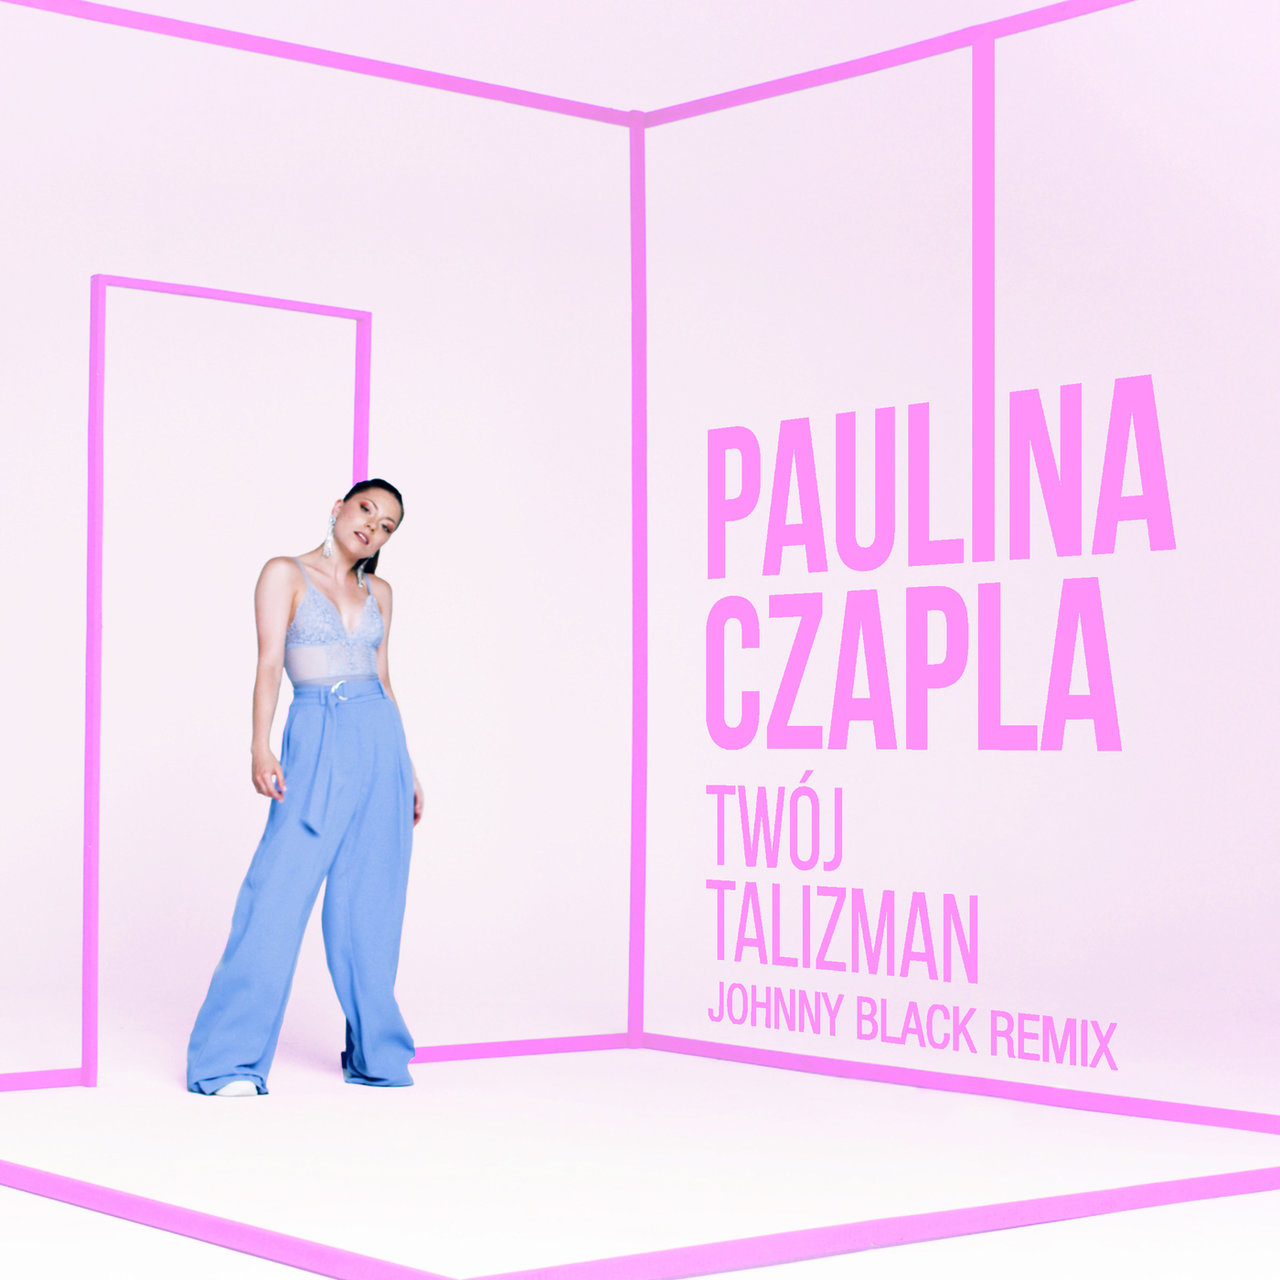 Paulina Czapla w zaskakującej odsłonie! Posłuchaj remixu do "Twój talizman"